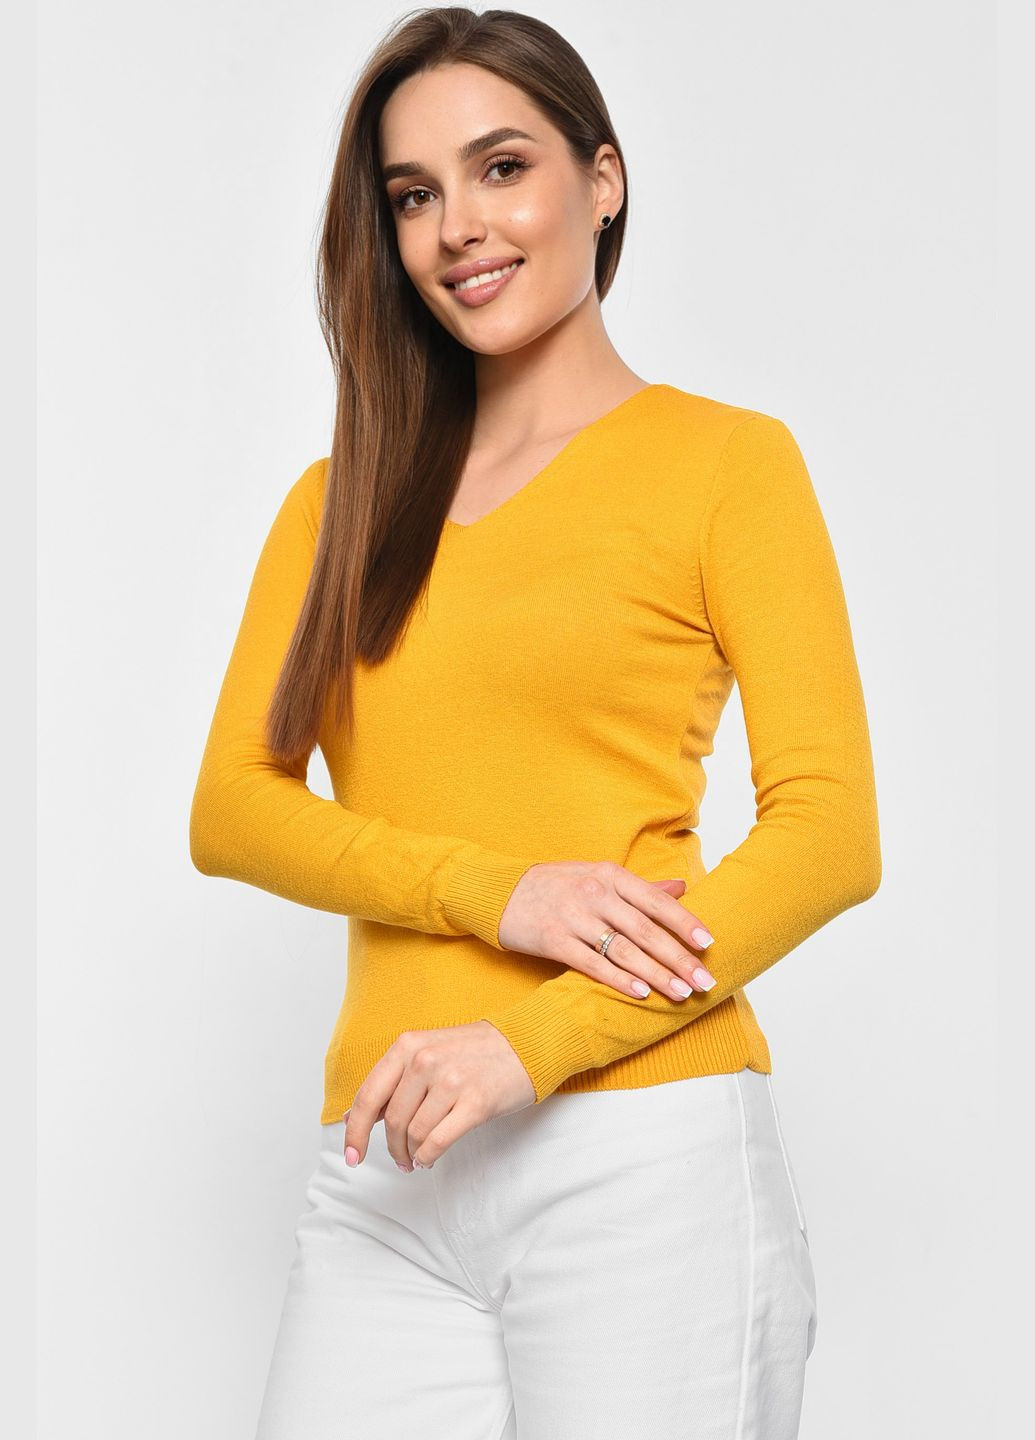 Горчичный демисезонный кофта женская горчичного цвета пуловер Let's Shop